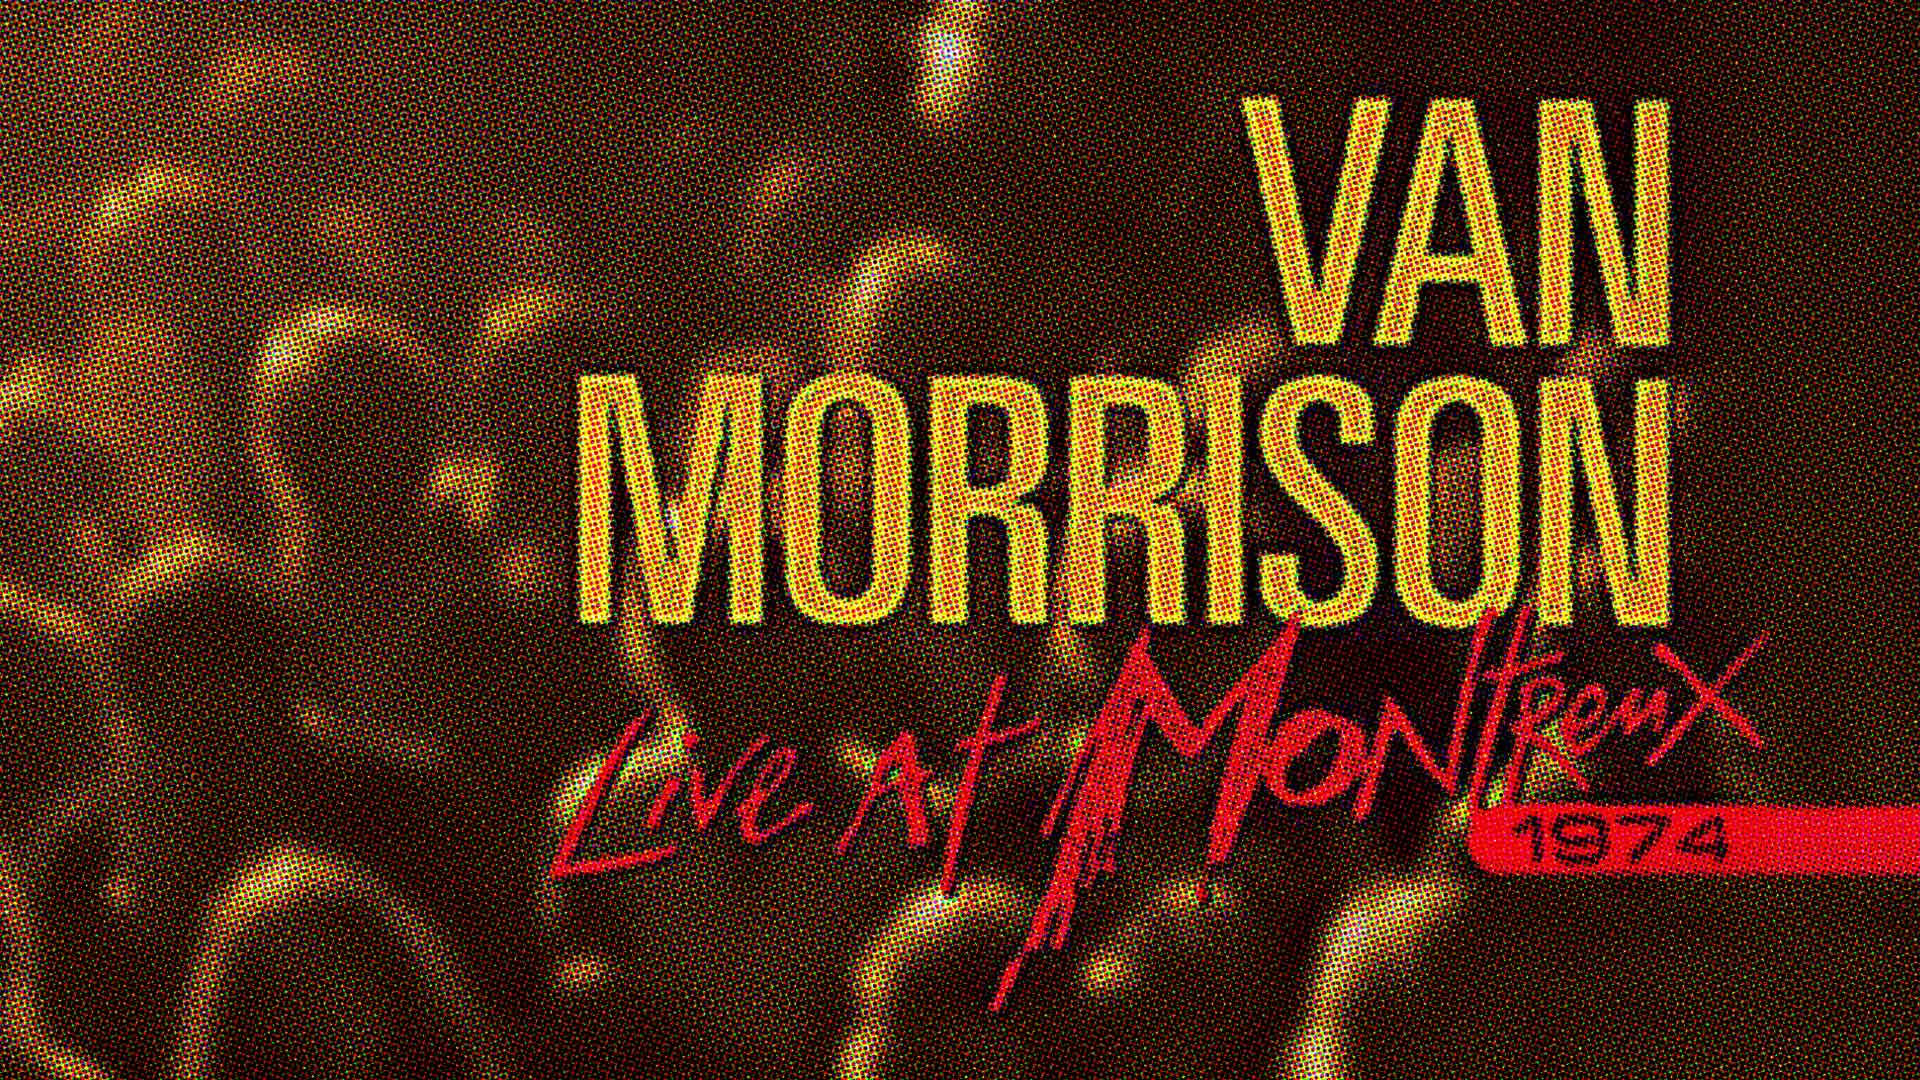 Van Morrison Montreux Albumomslag Wallpaper